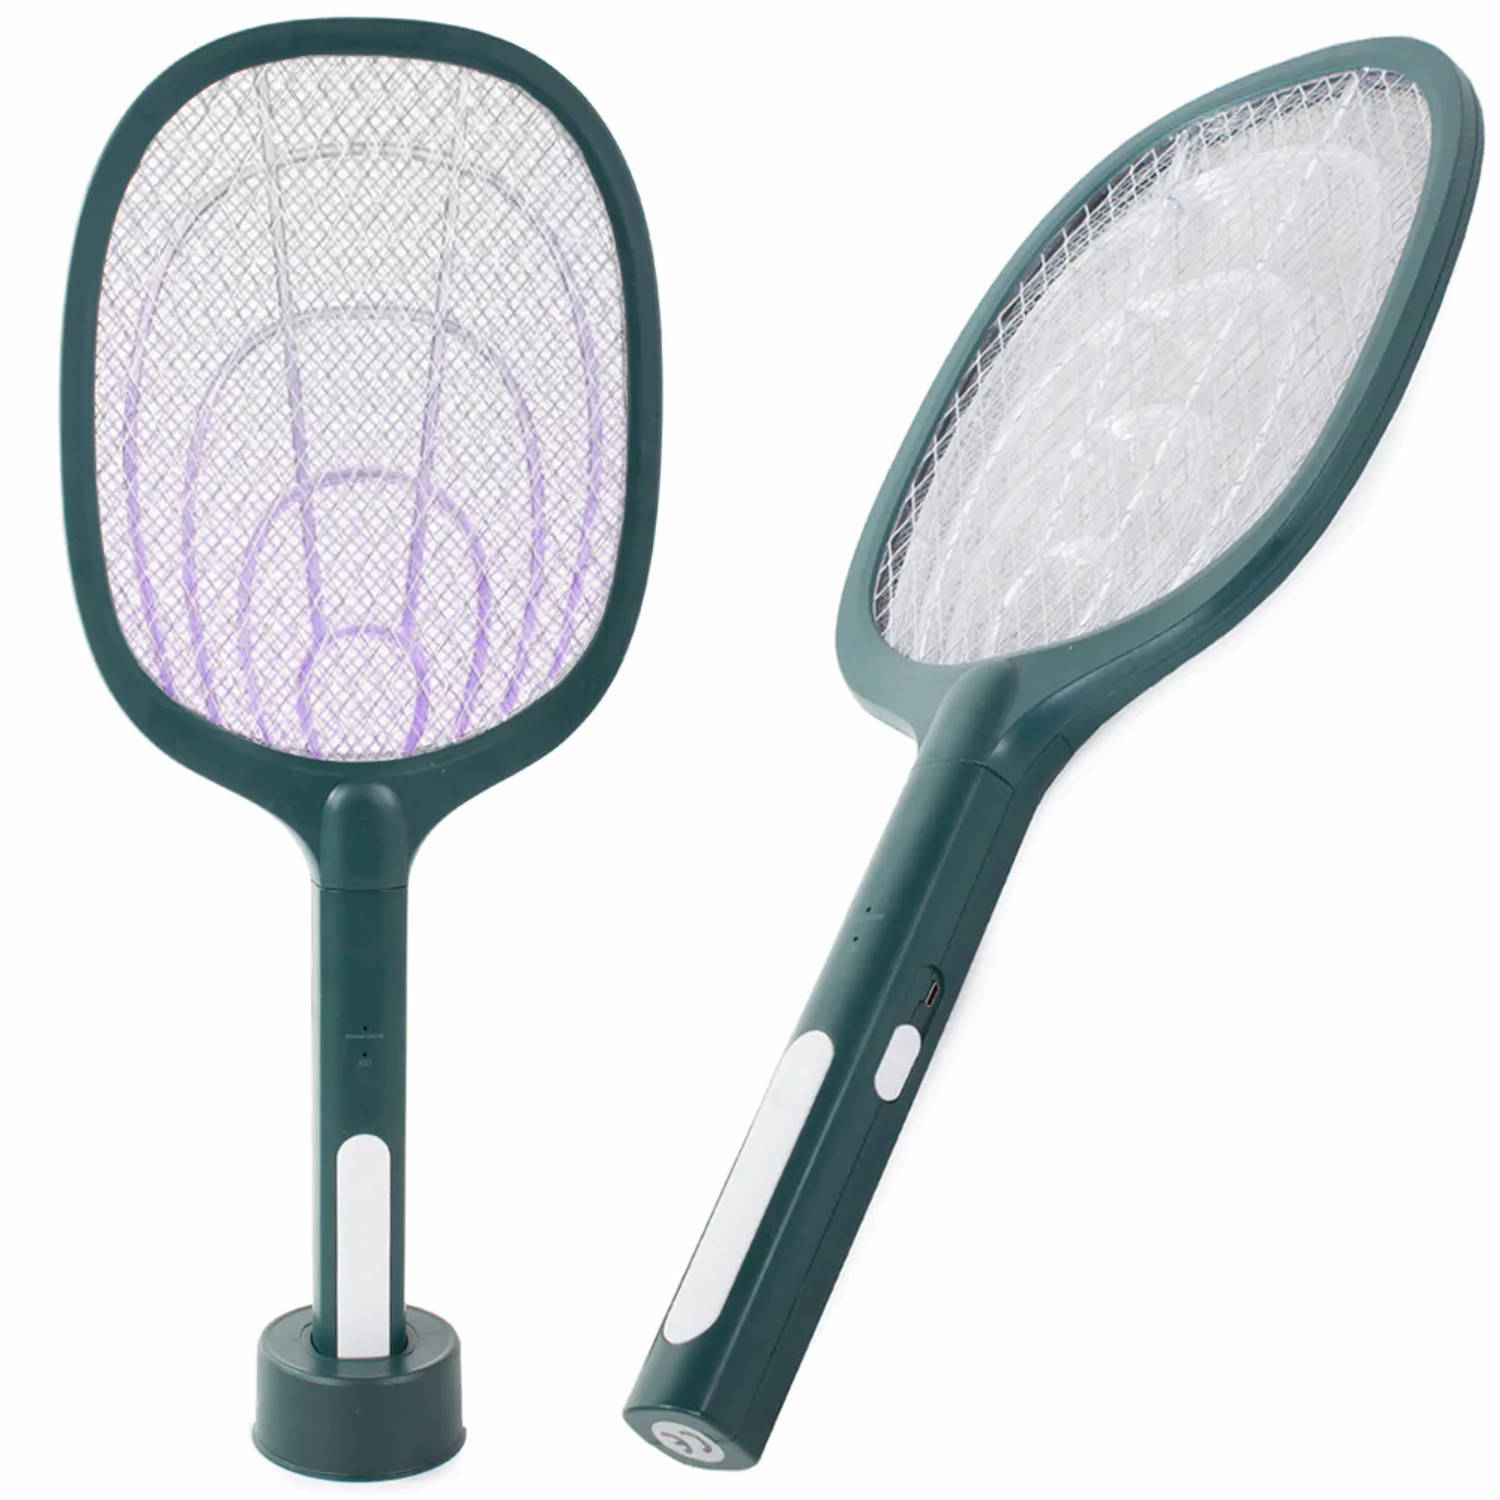 UV lamp en elektrische vliegenmepper met standaard 2 in 1 – Anti muggen en insecten – Insectenlamp - Zorgt voor minder insecten in huis – Oplaadbaar via meegeleverde USB kabel – Gr